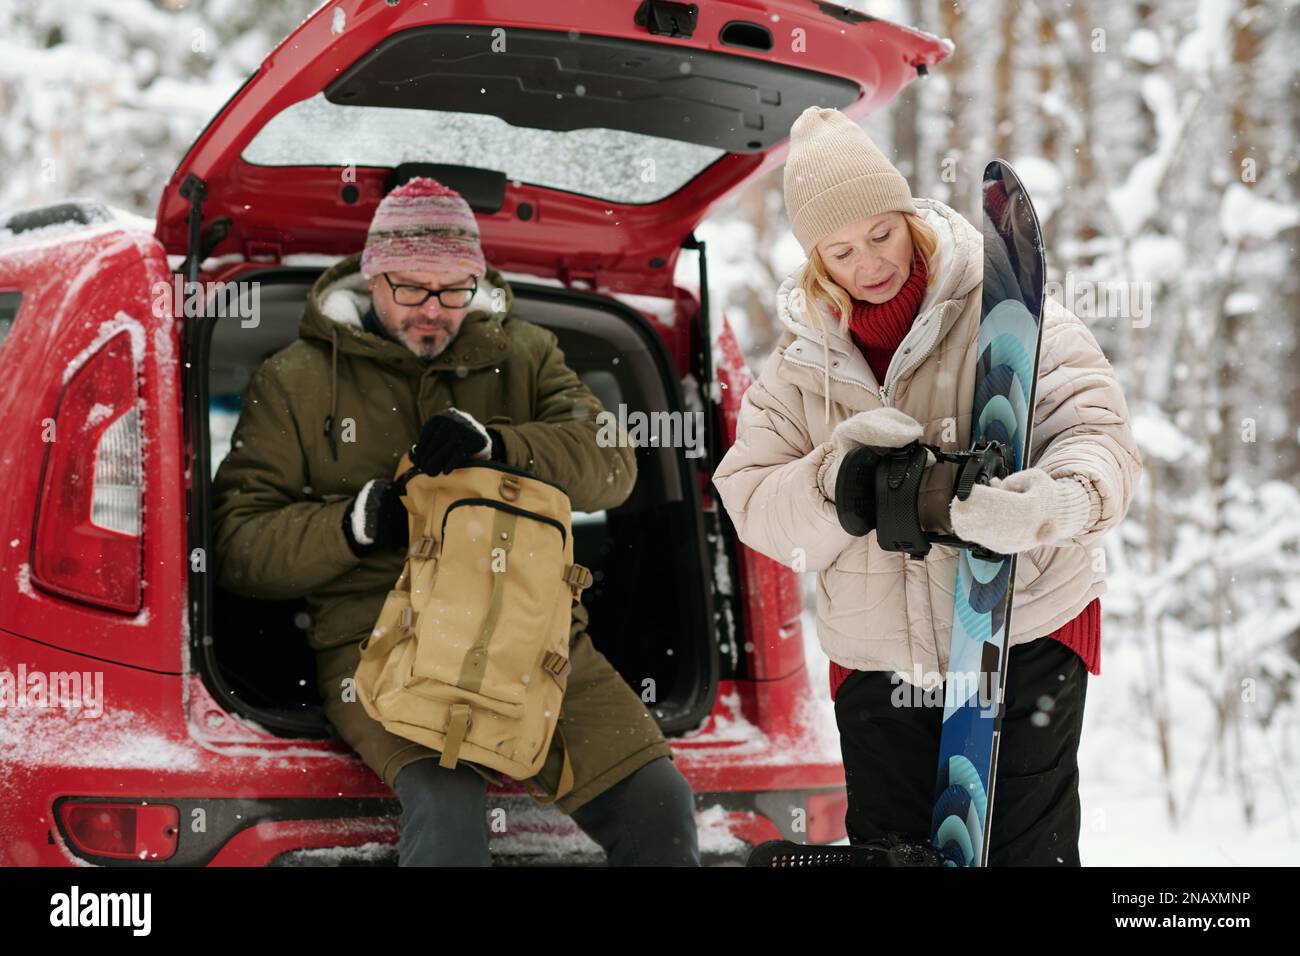 Reife blonde Frau, die während des Winterurlaubs Snowboard schaut, während ihr Mann im Kofferraum sitzt und den Reißverschluss aufmacht Stockfoto